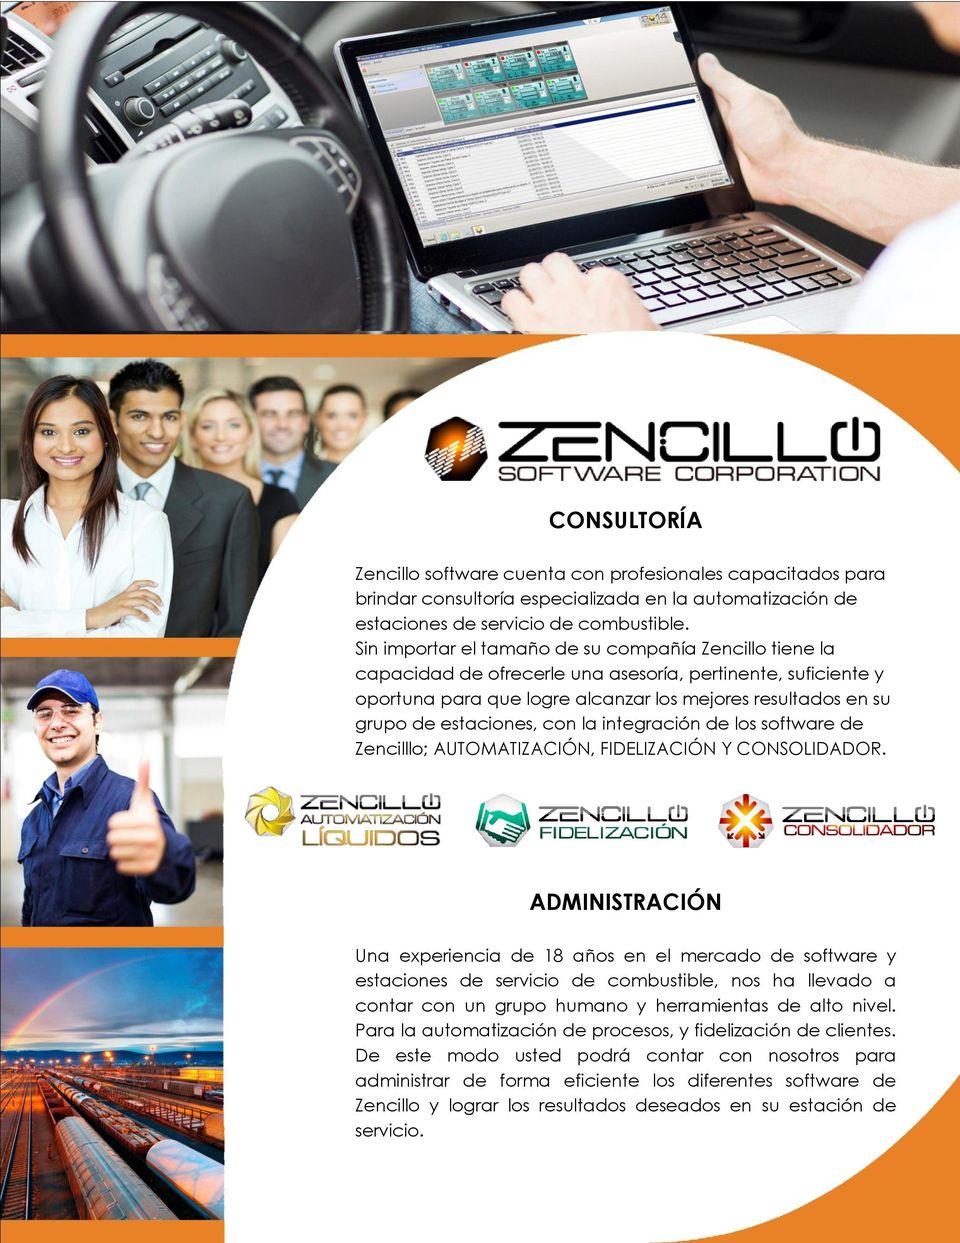 estaciones, con la integración de los software de Zencilllo; AUTOMATIZACIÓN, FIDELIZACIÓN Y CONSOLIDADOR.